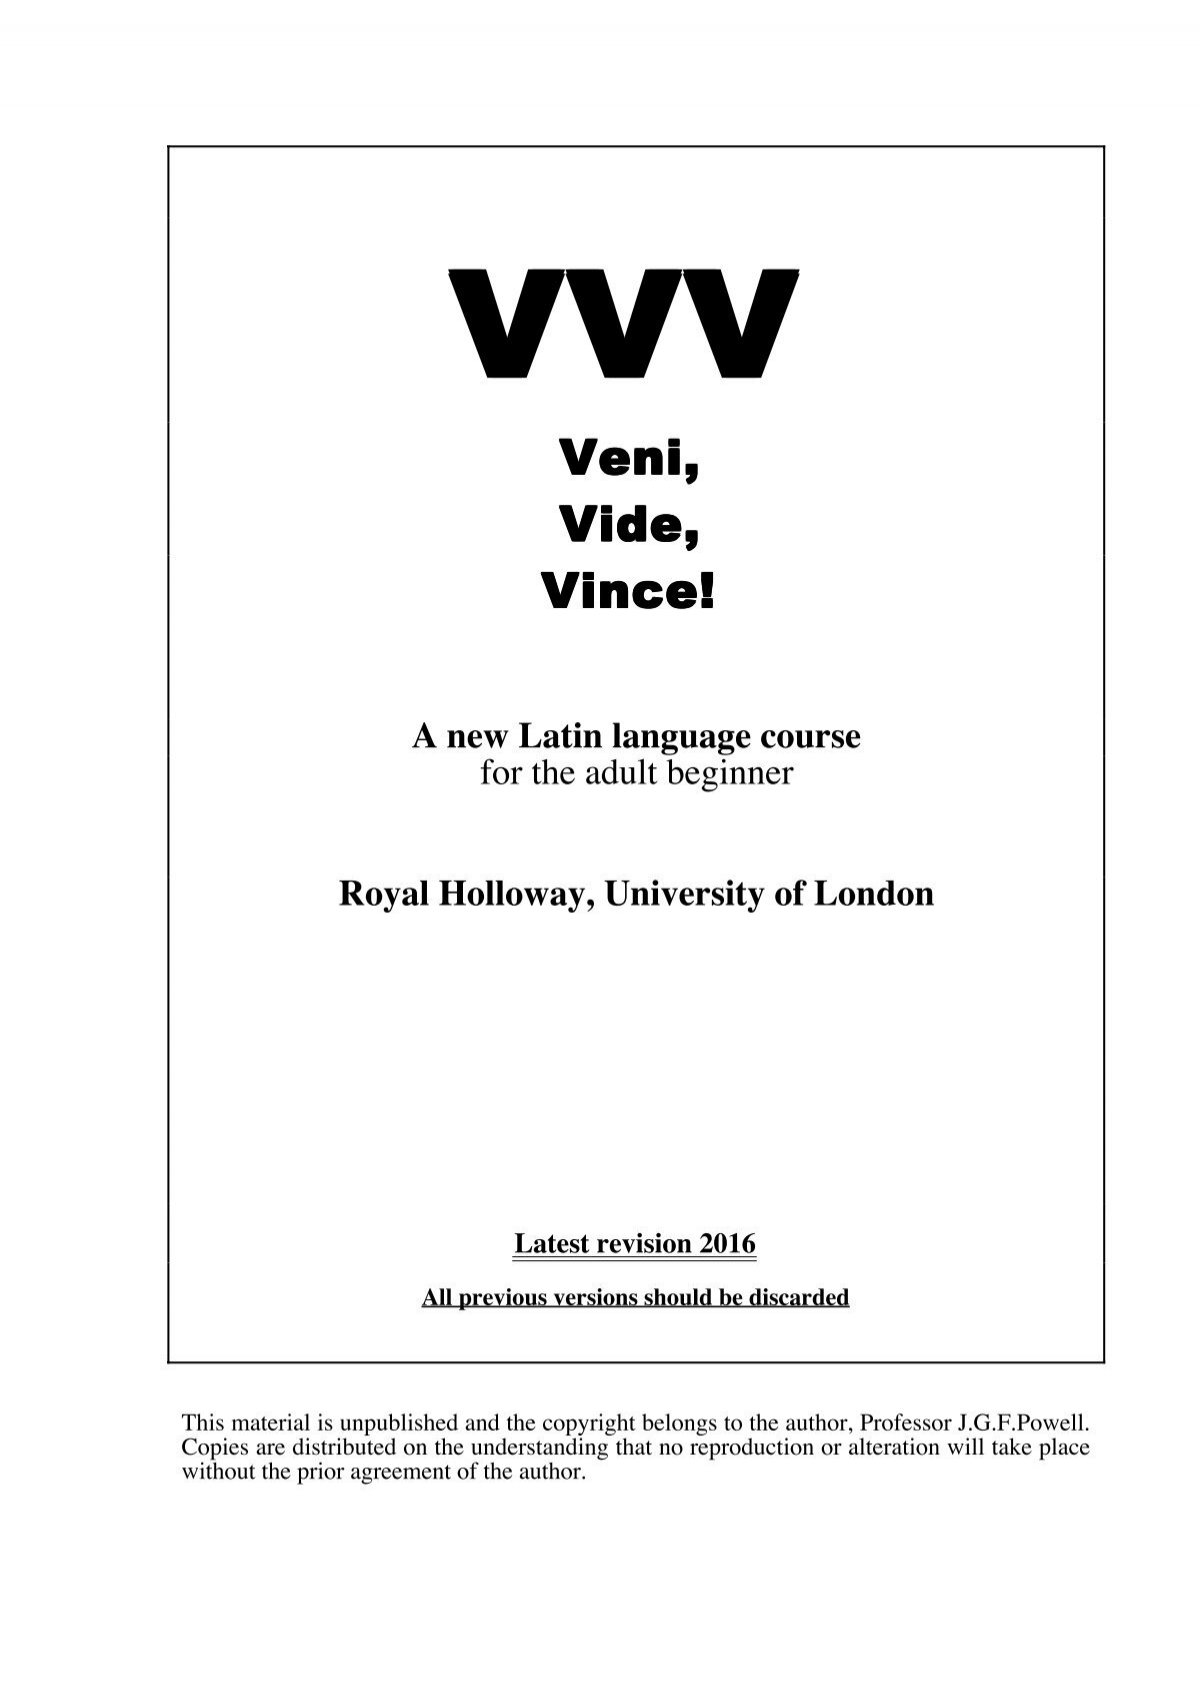 Veni, Vidi, Vici - Dictionary Definition | Art Board Print